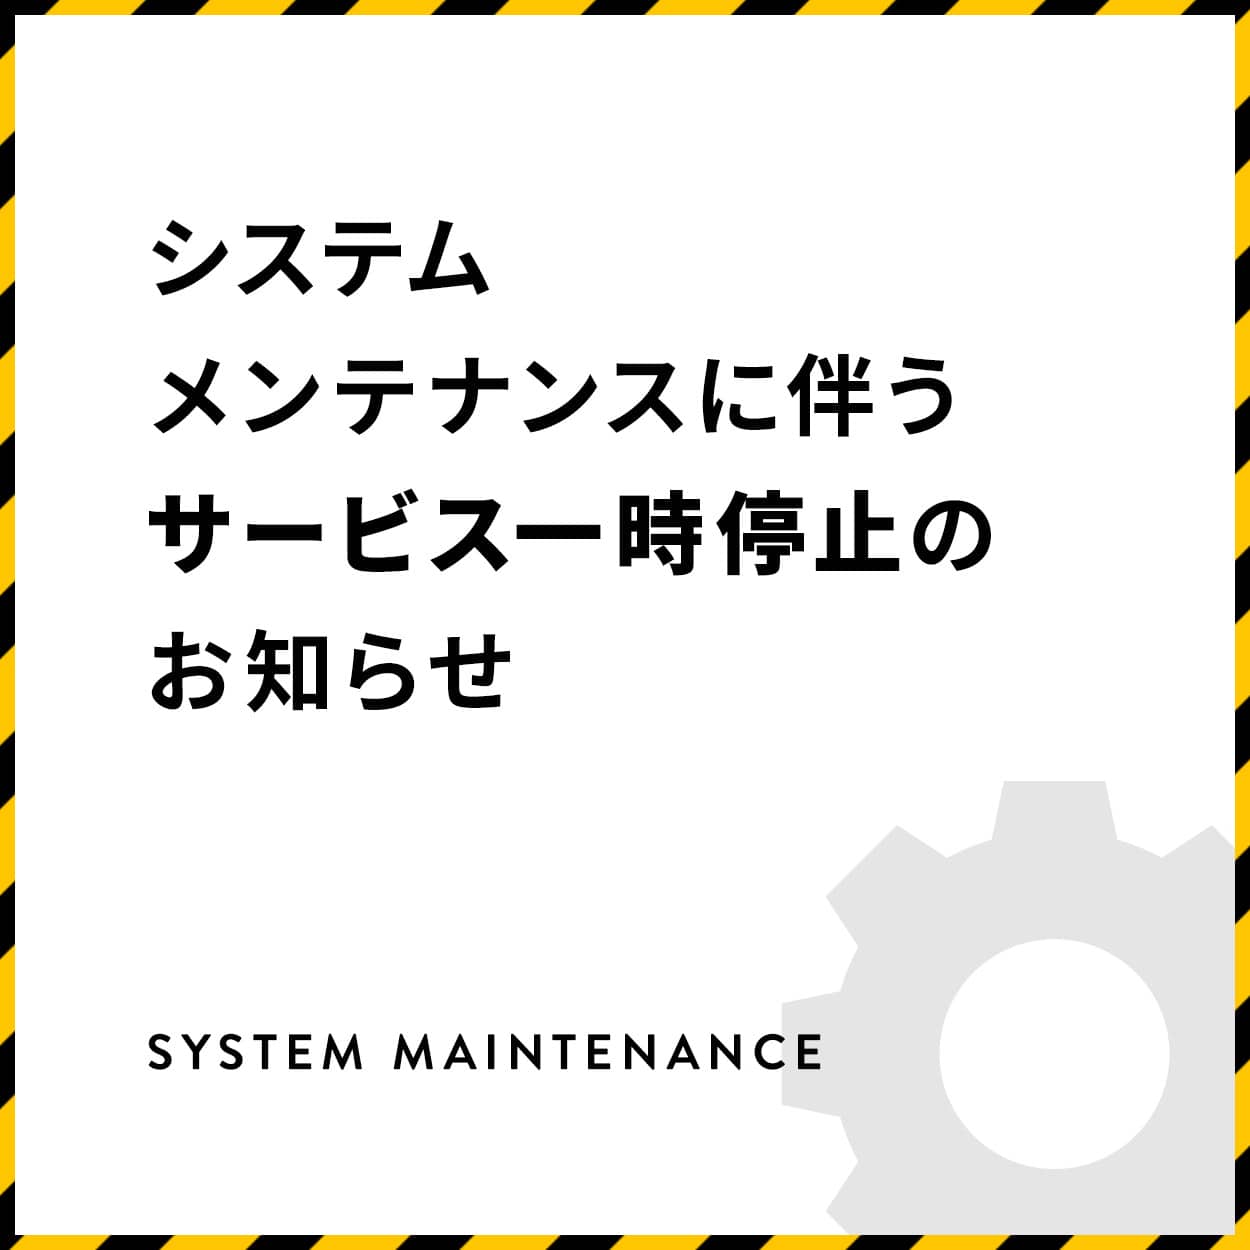 【お知らせ】システムメンテナンスによるサービス一時停止のお知らせ